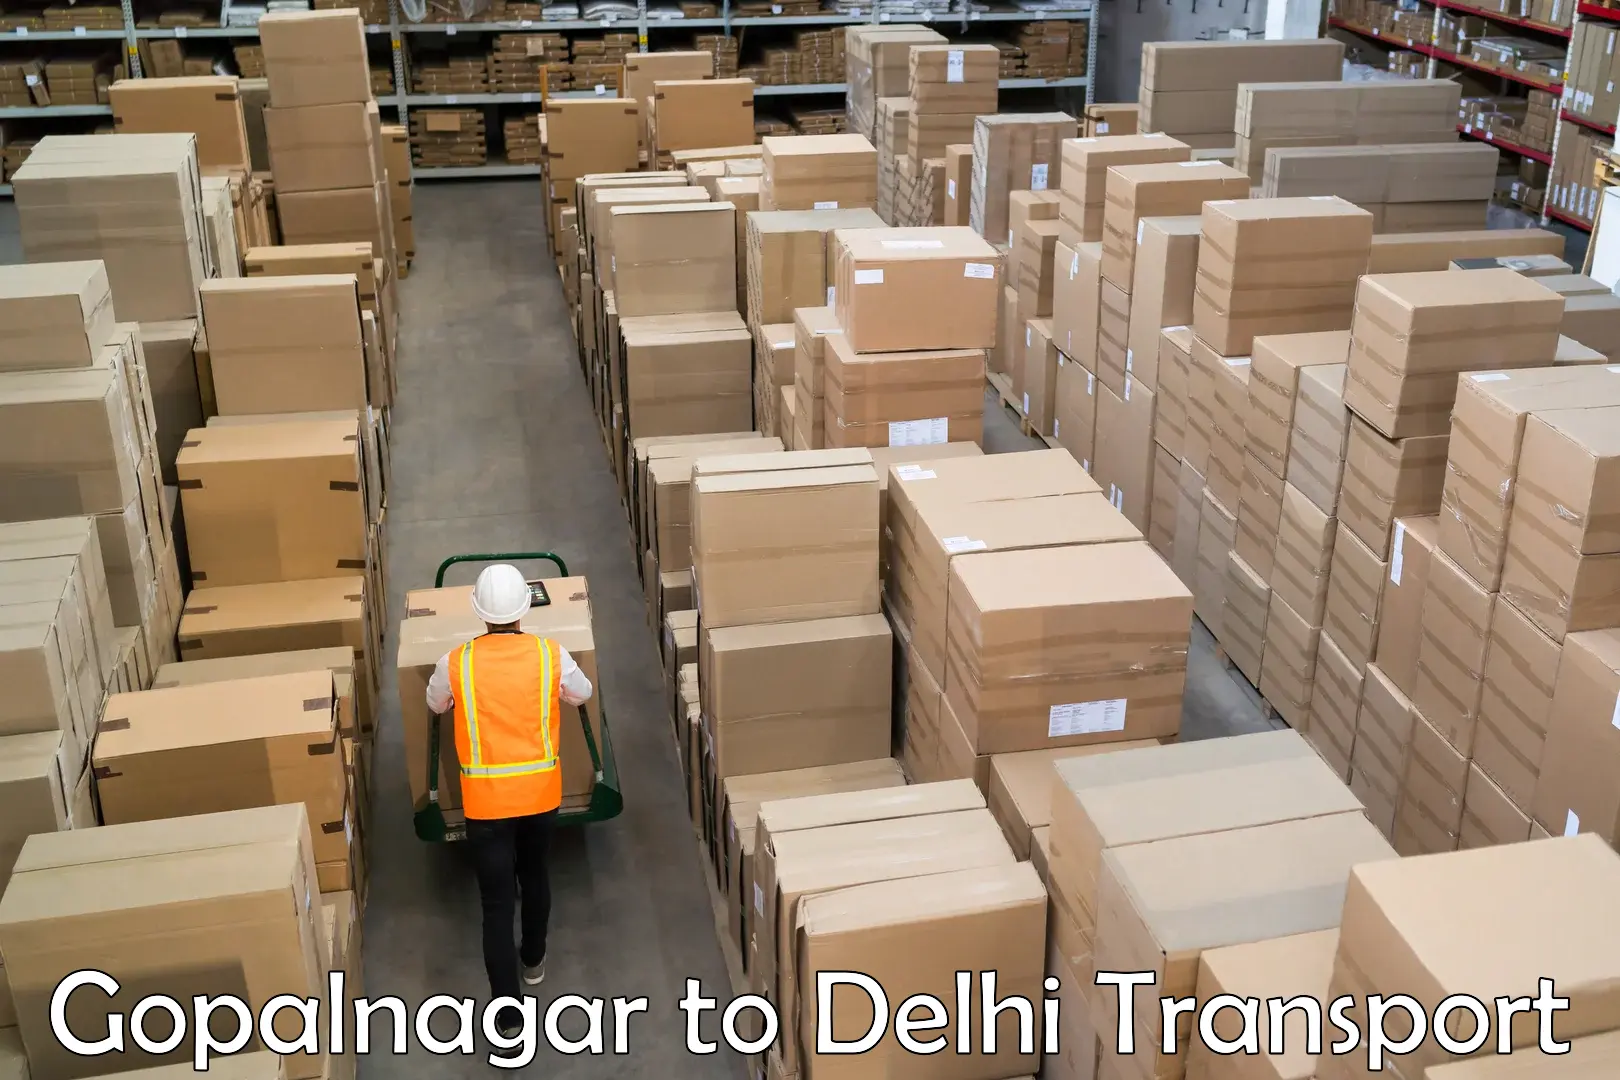 Commercial transport service Gopalnagar to Kalkaji